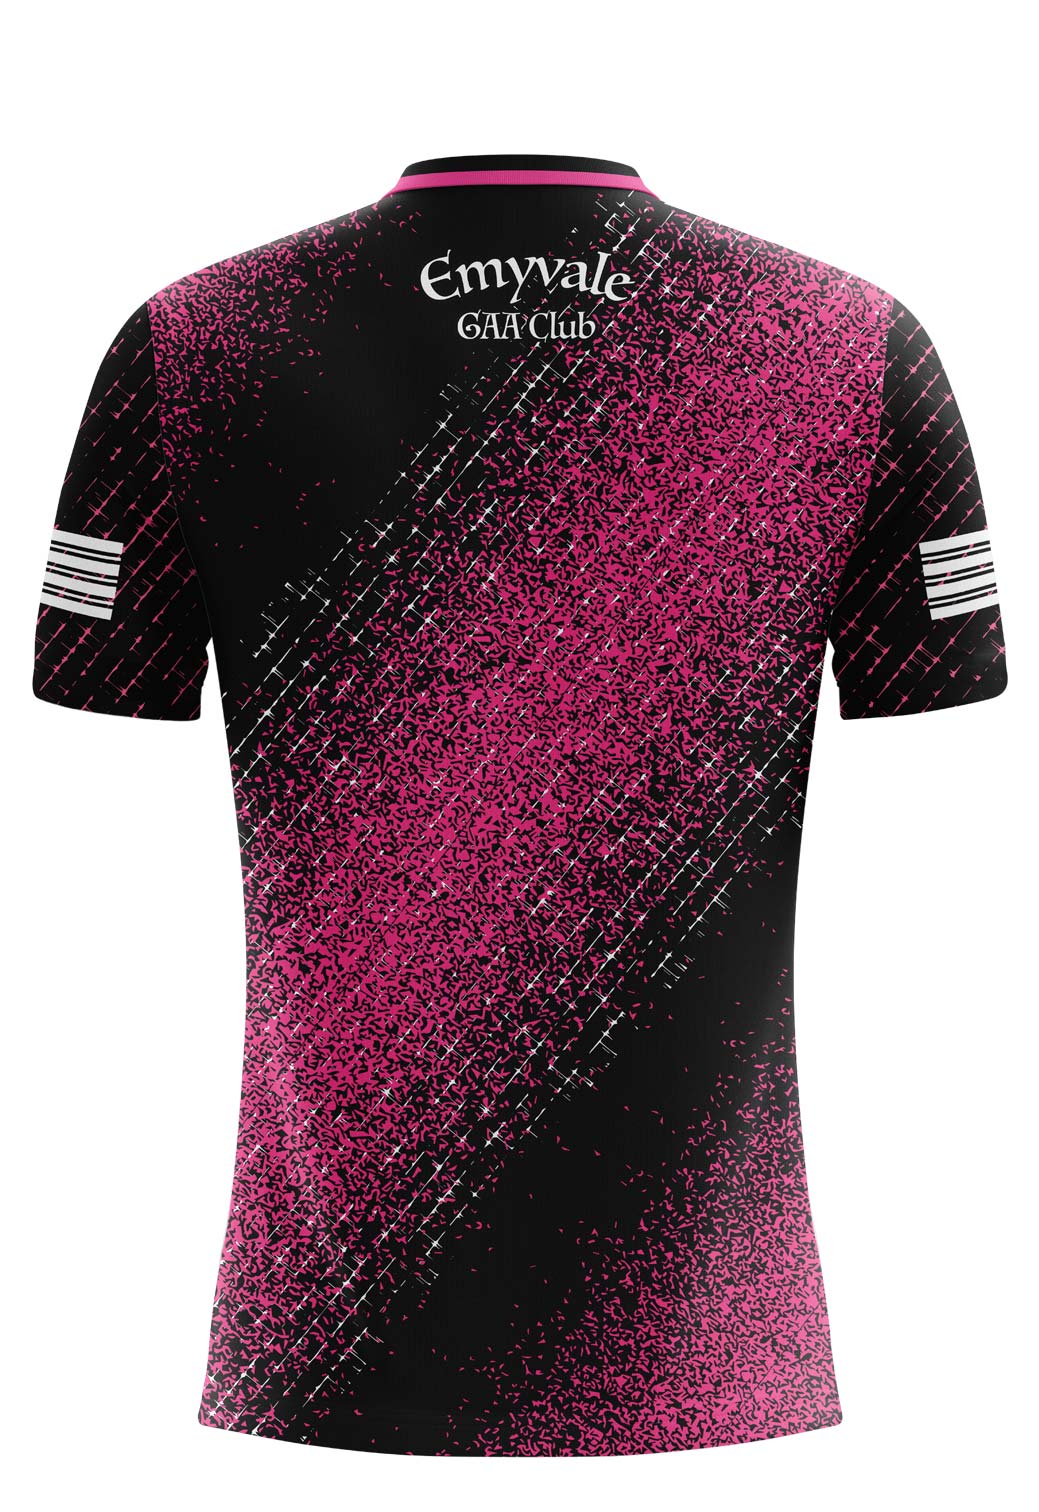 Emyvale GAA Pink Comet Style Training Jersey Kids